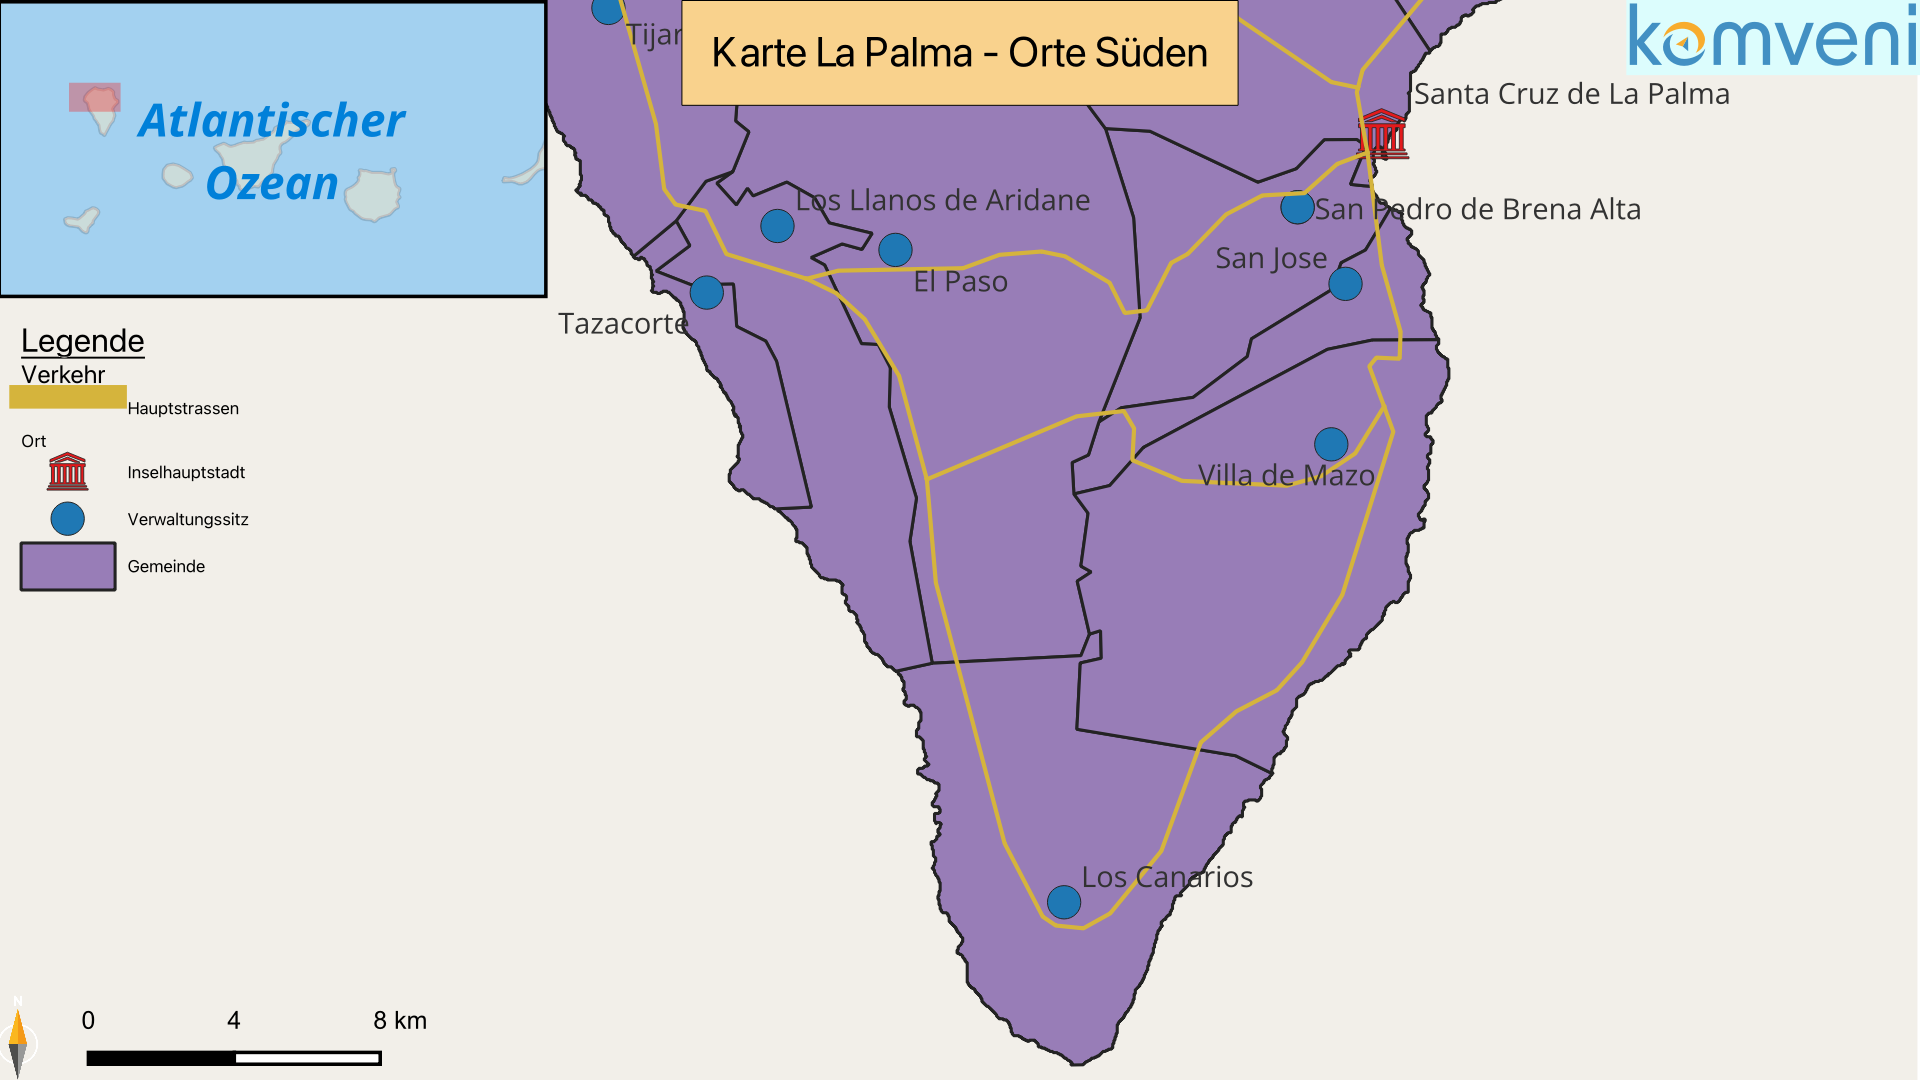 Karte La Palma Orte Sueden